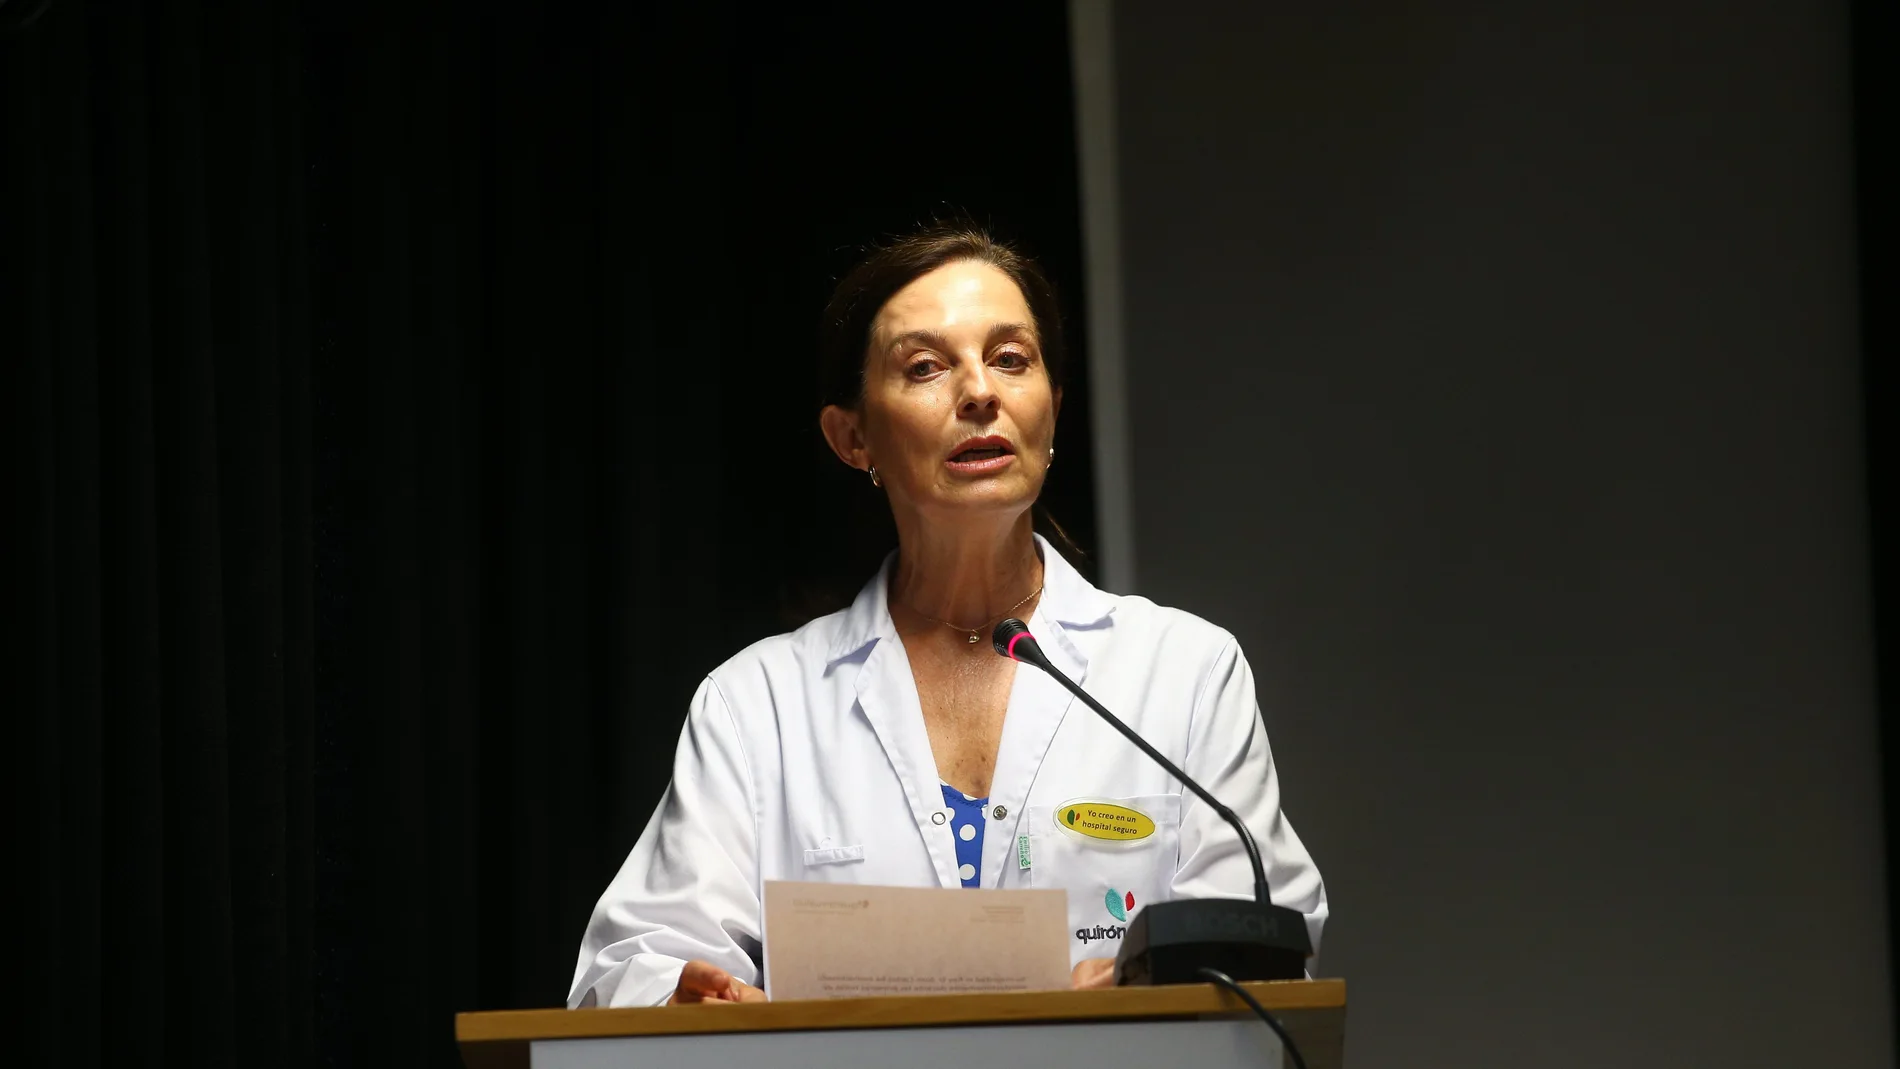 La gerente territorial del grupo de hospitales Quirón en Madrid, la doctora Lucía Alonso